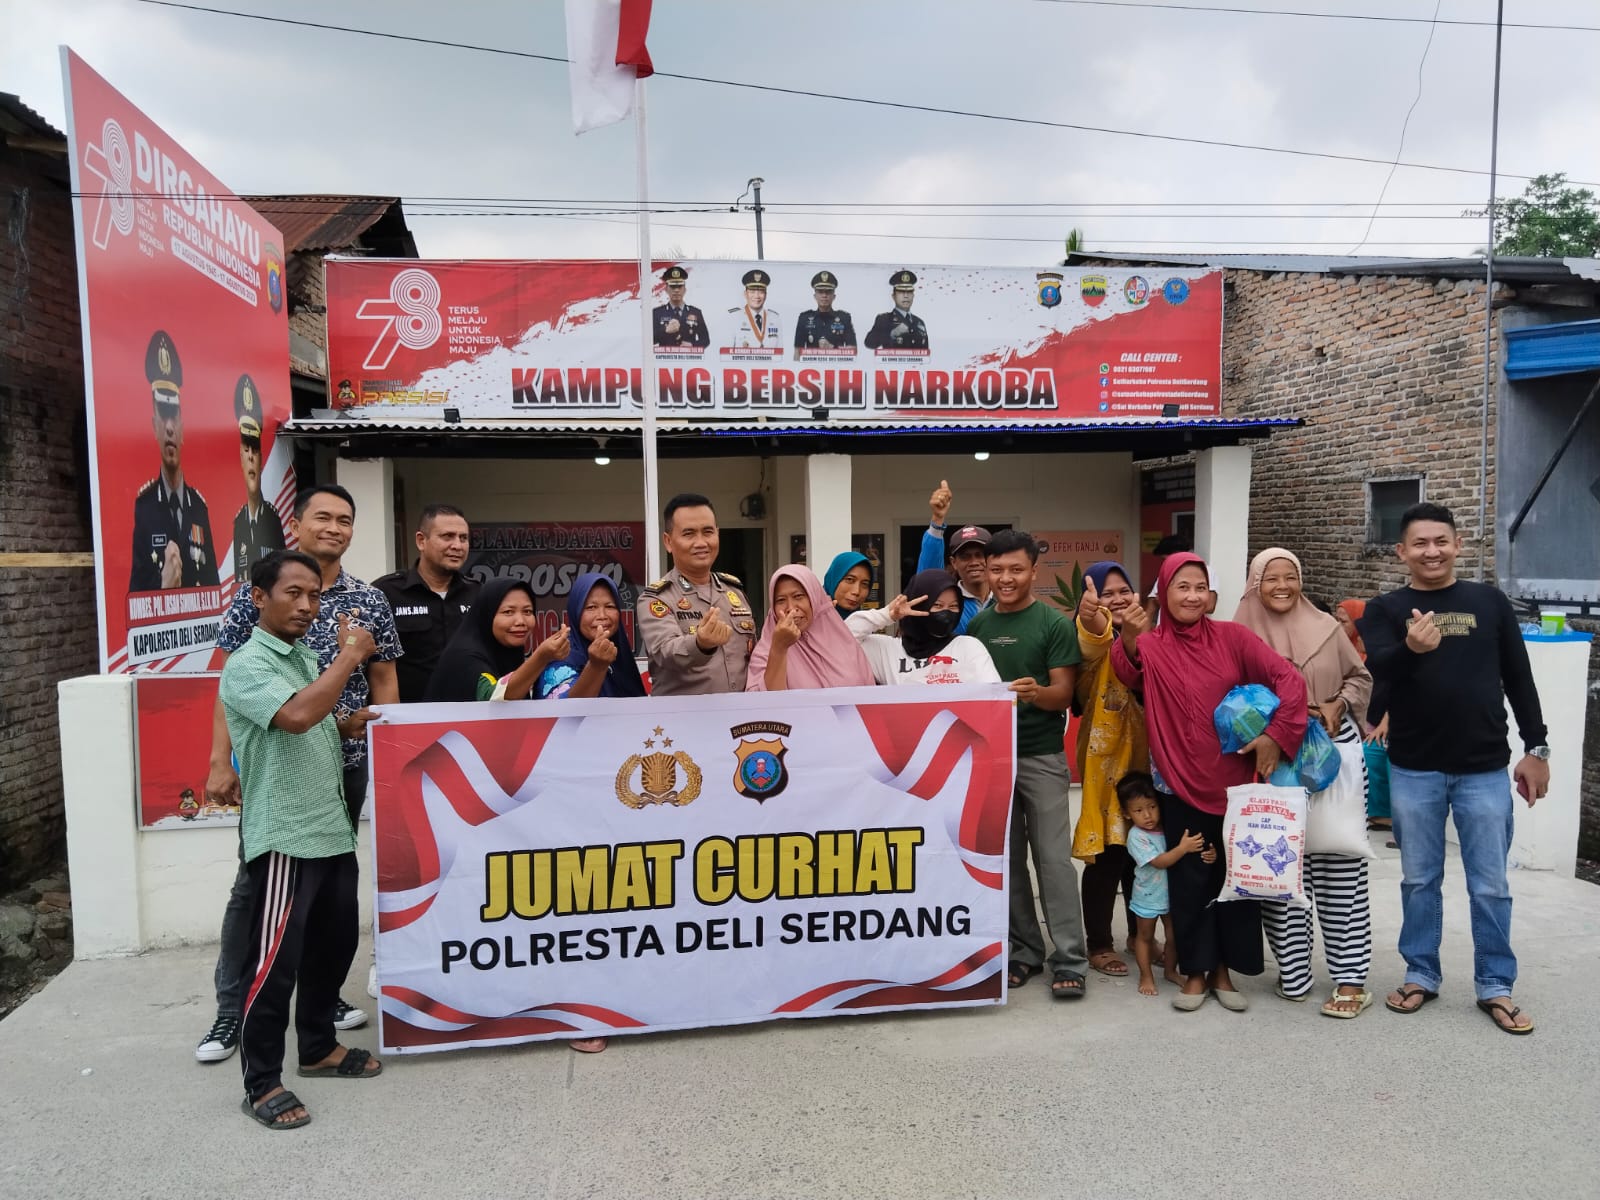 Jum'at Curhat Polresta Deli Serdang Di Posko Kampung Bersih Narkoba